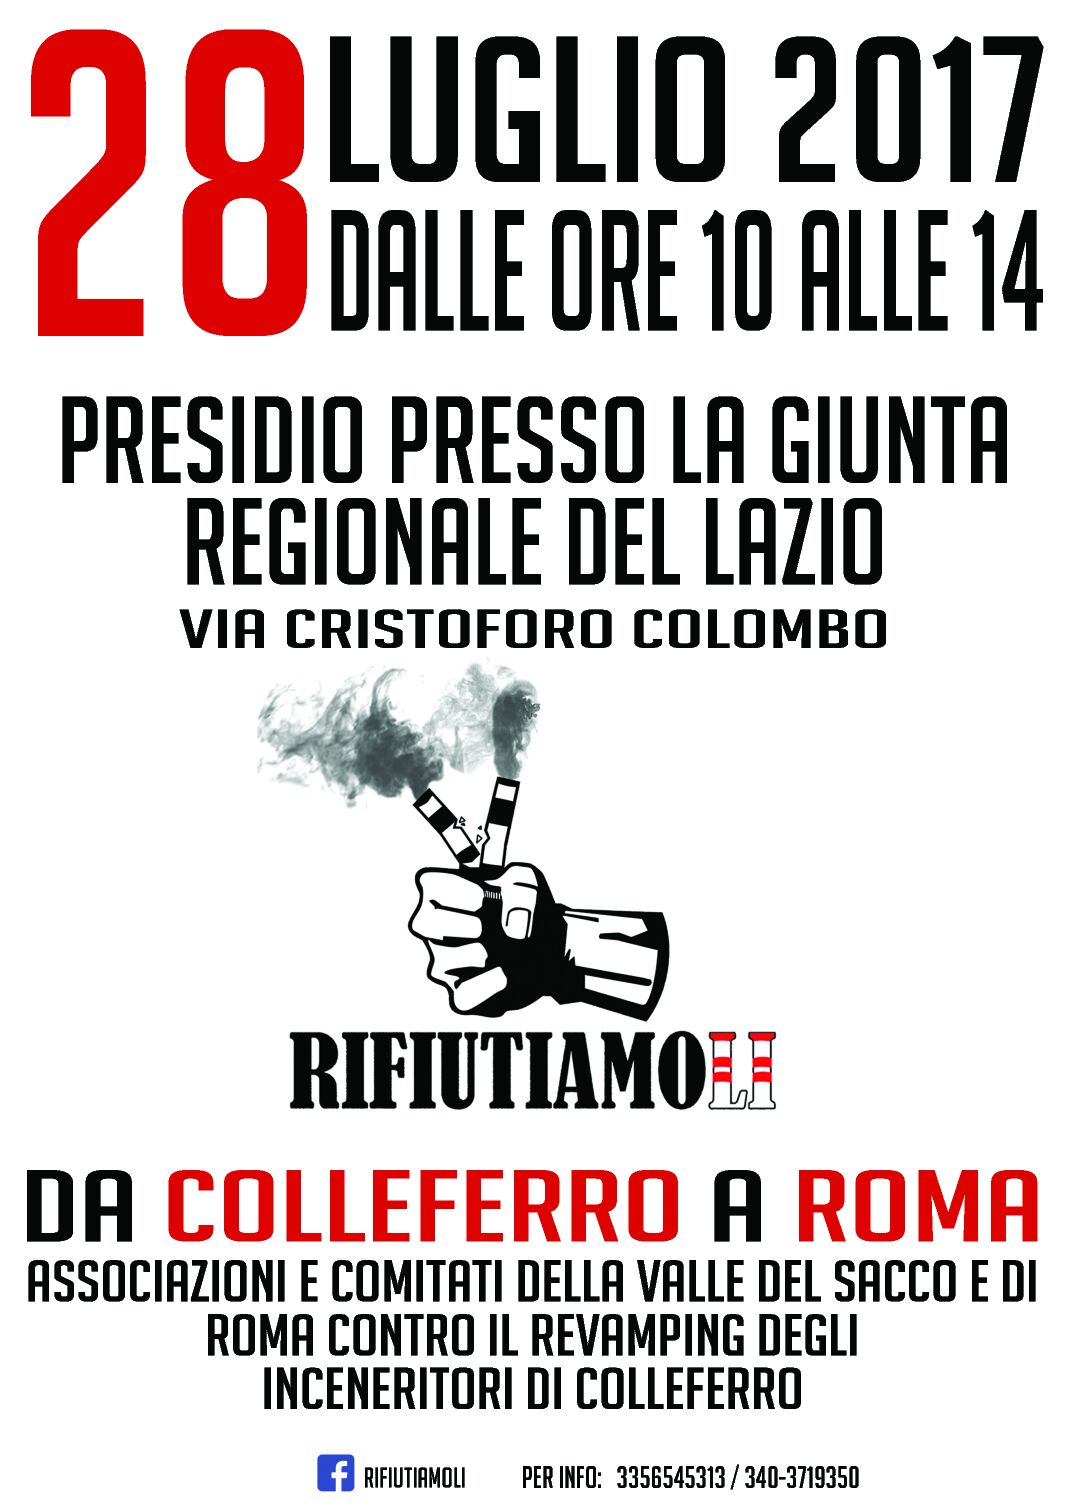 Manifestazione del 28 luglio 2017 davanti la Regione Lazio: le richieste di Zero Waste